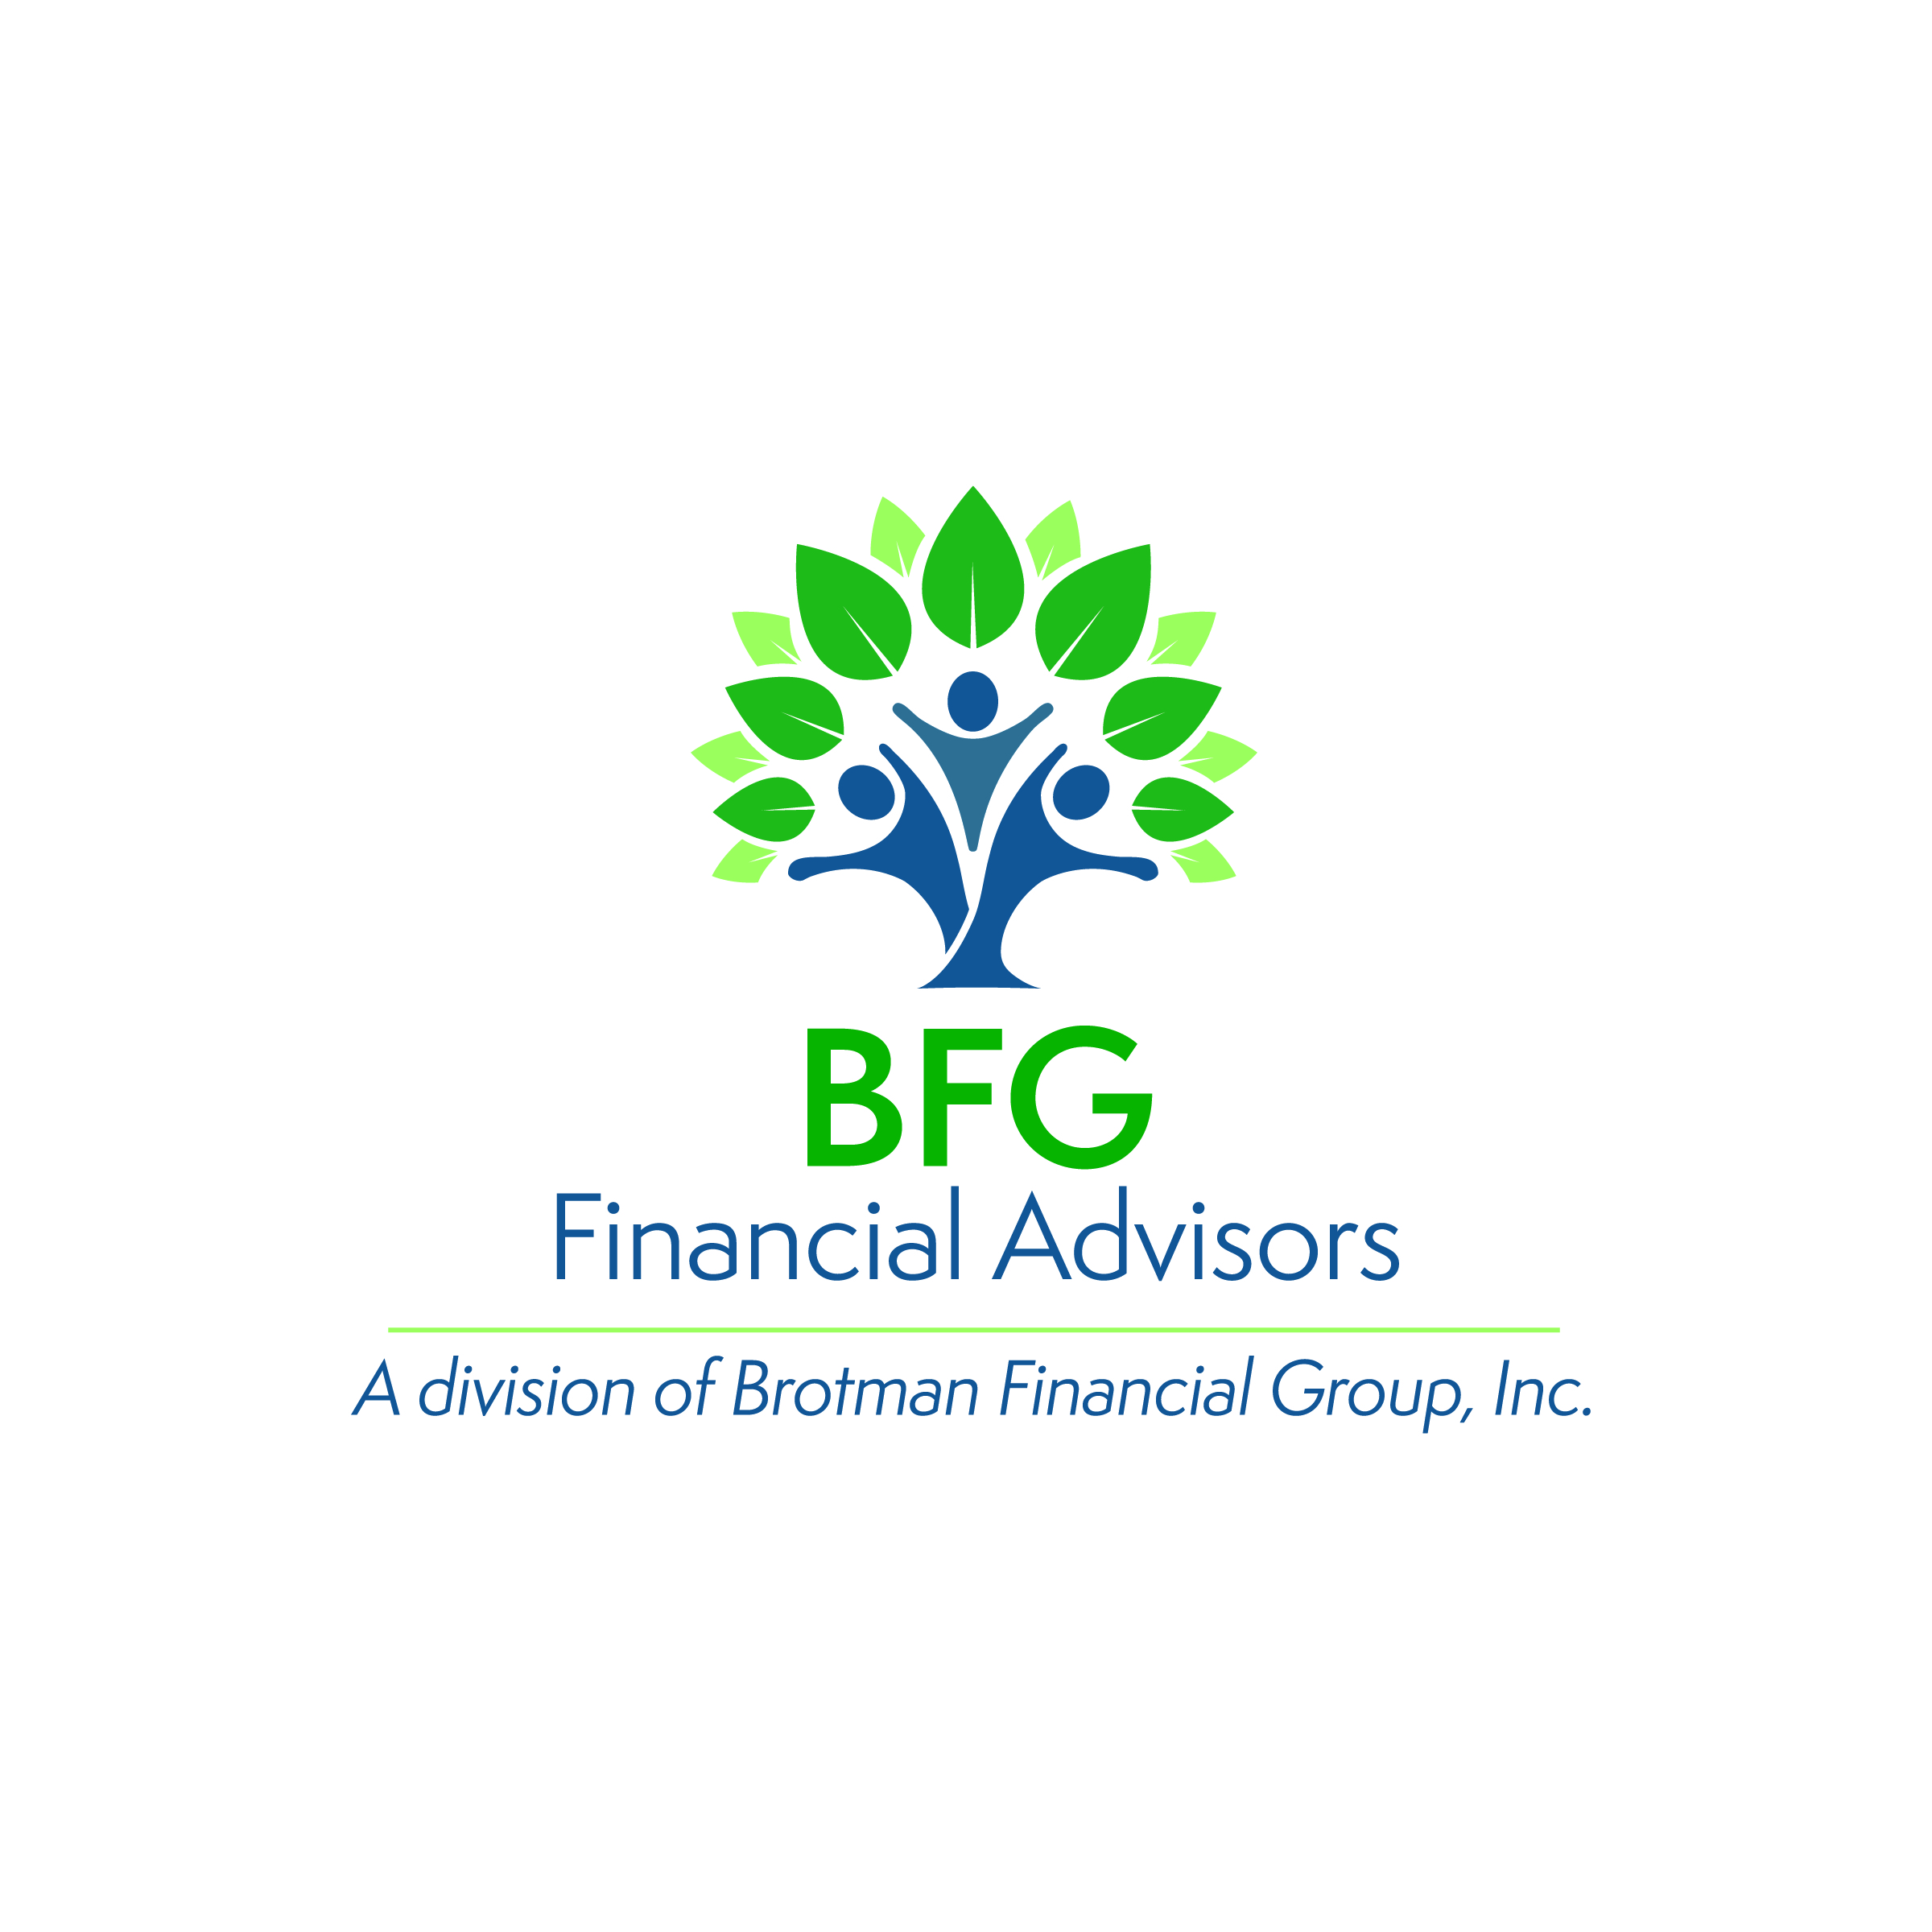 BFG Financial Advisors